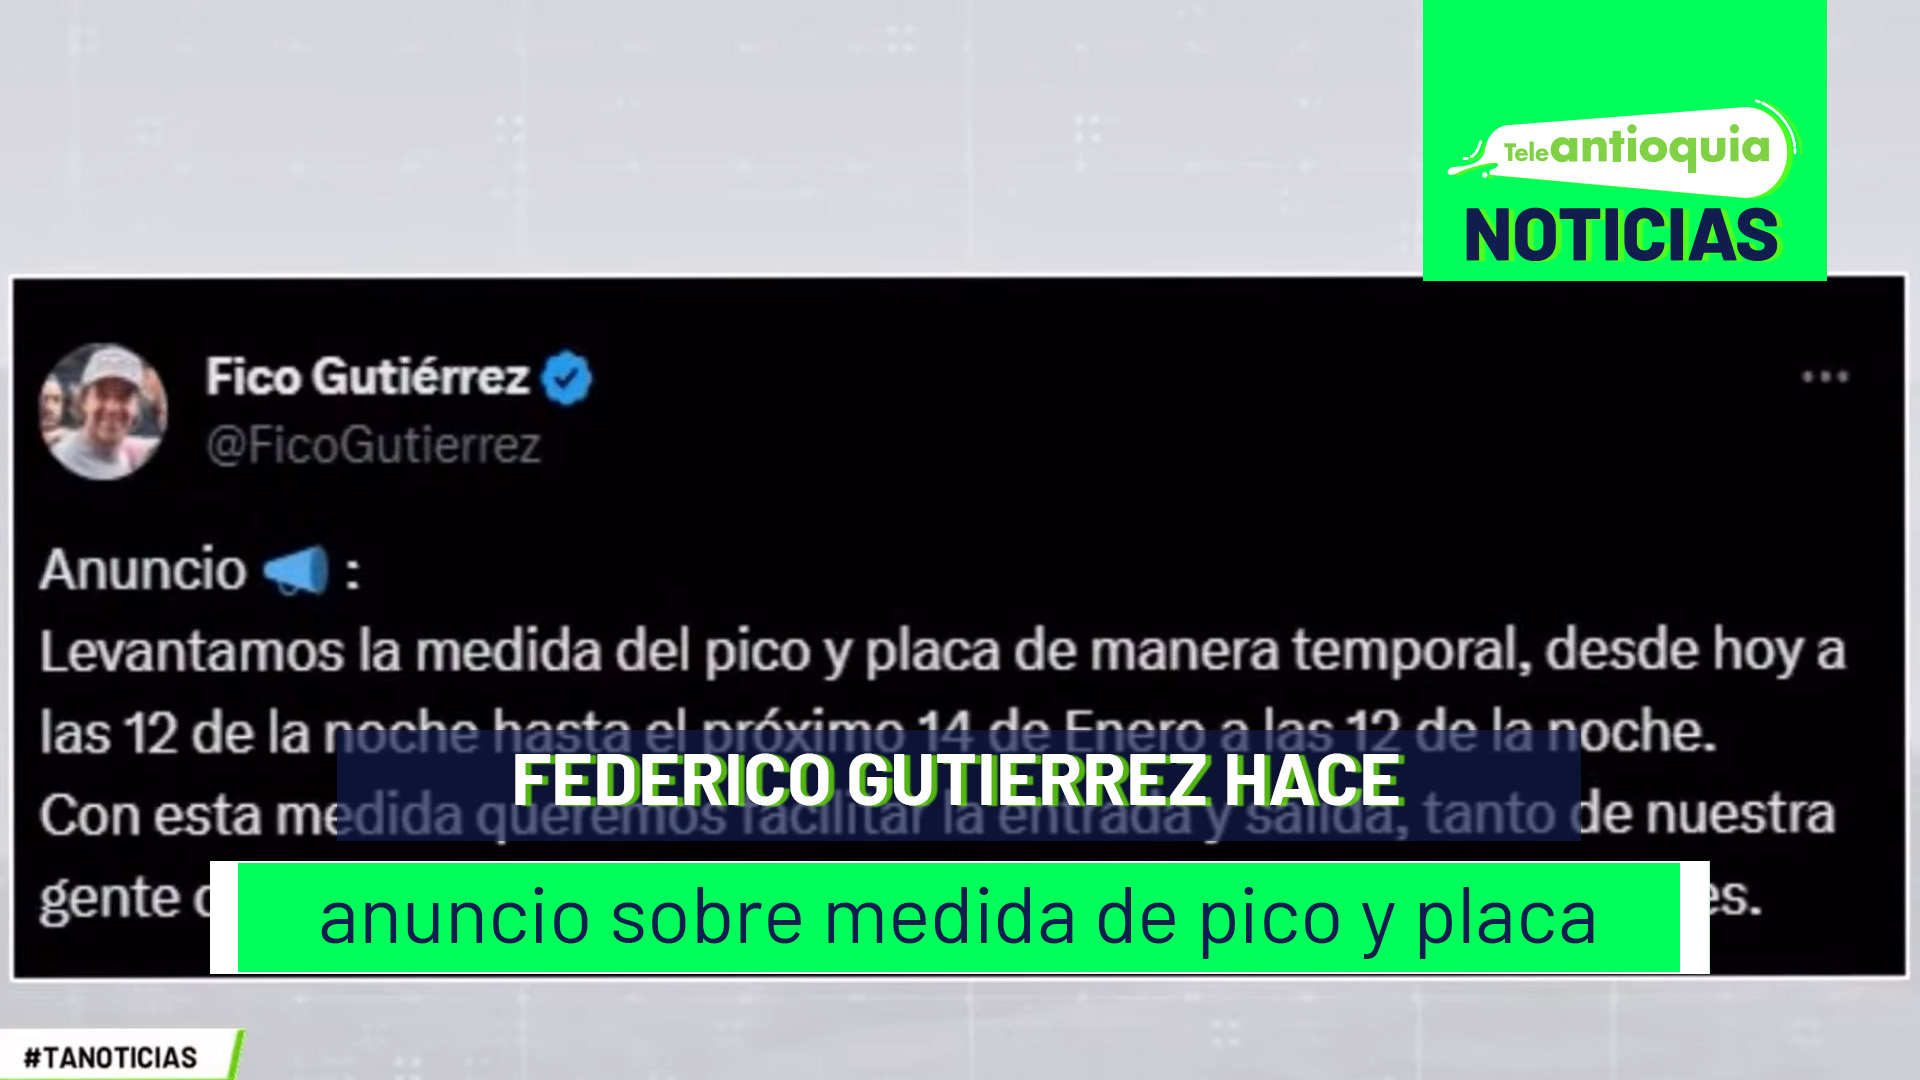 Federico Gutierrez hace anuncio sobre medida de pico y placa